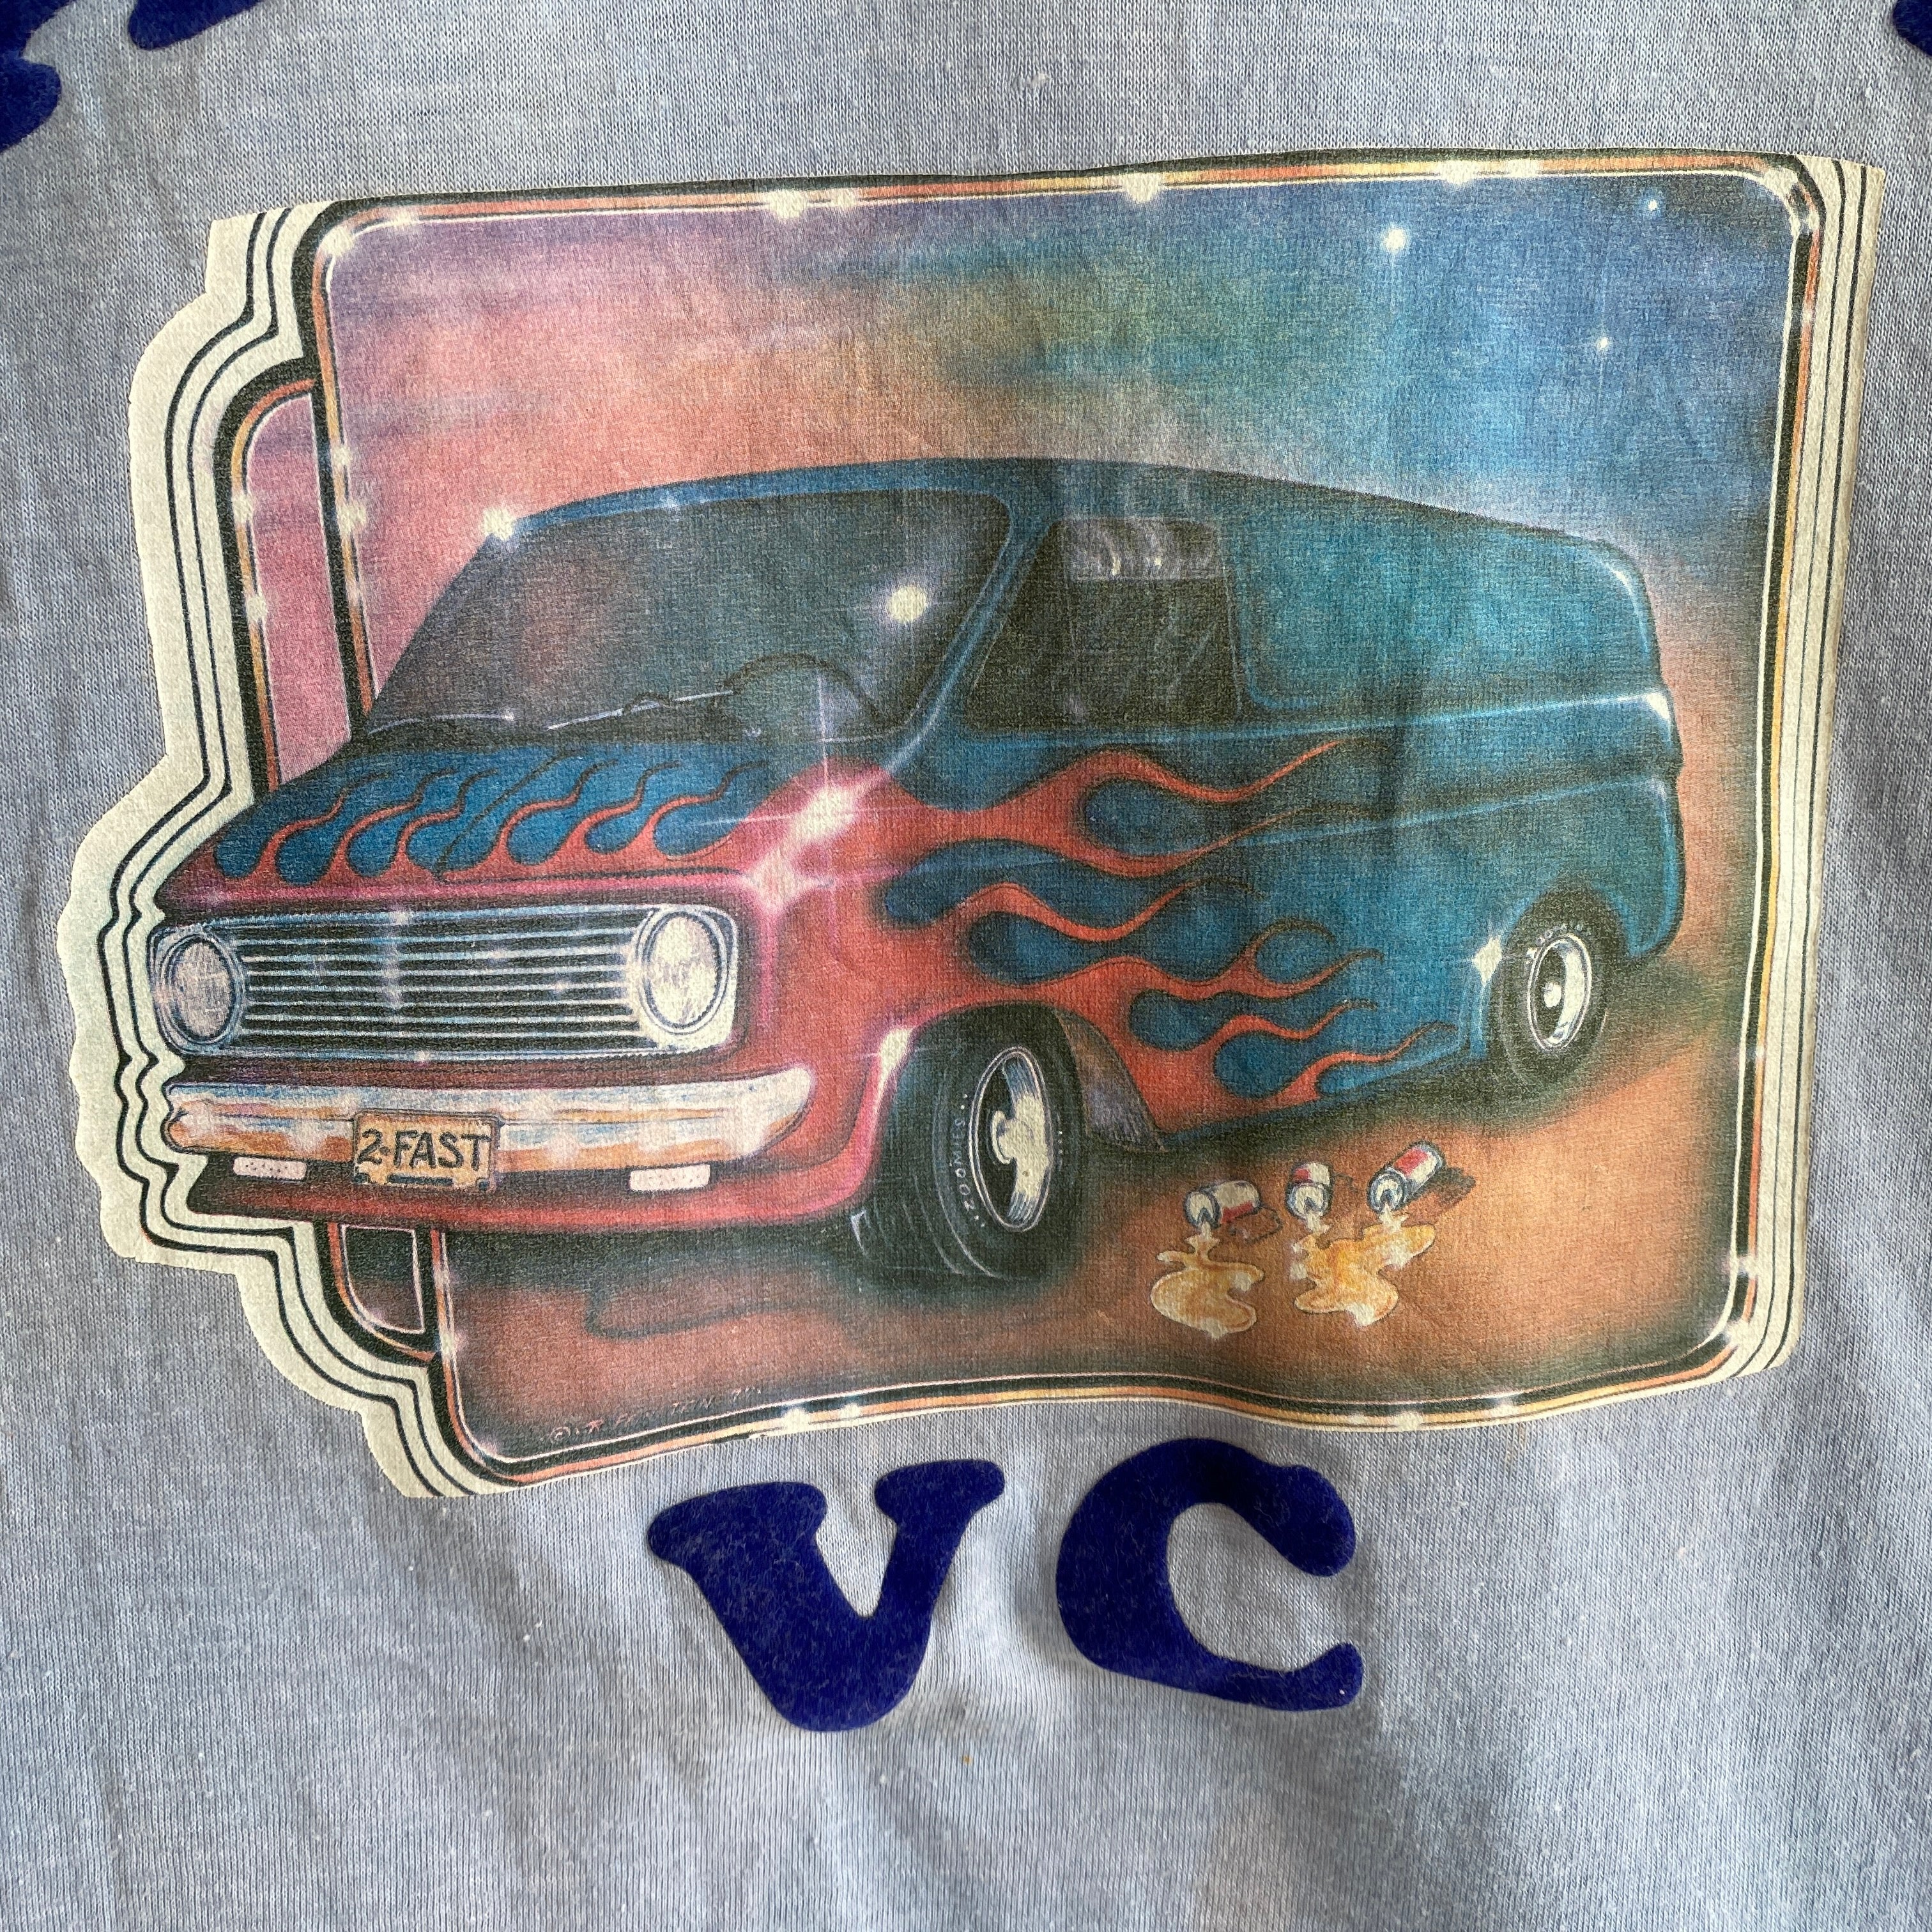 1970s DIY Stagecoach VC (Van Club?) T-shirt délavé et taché